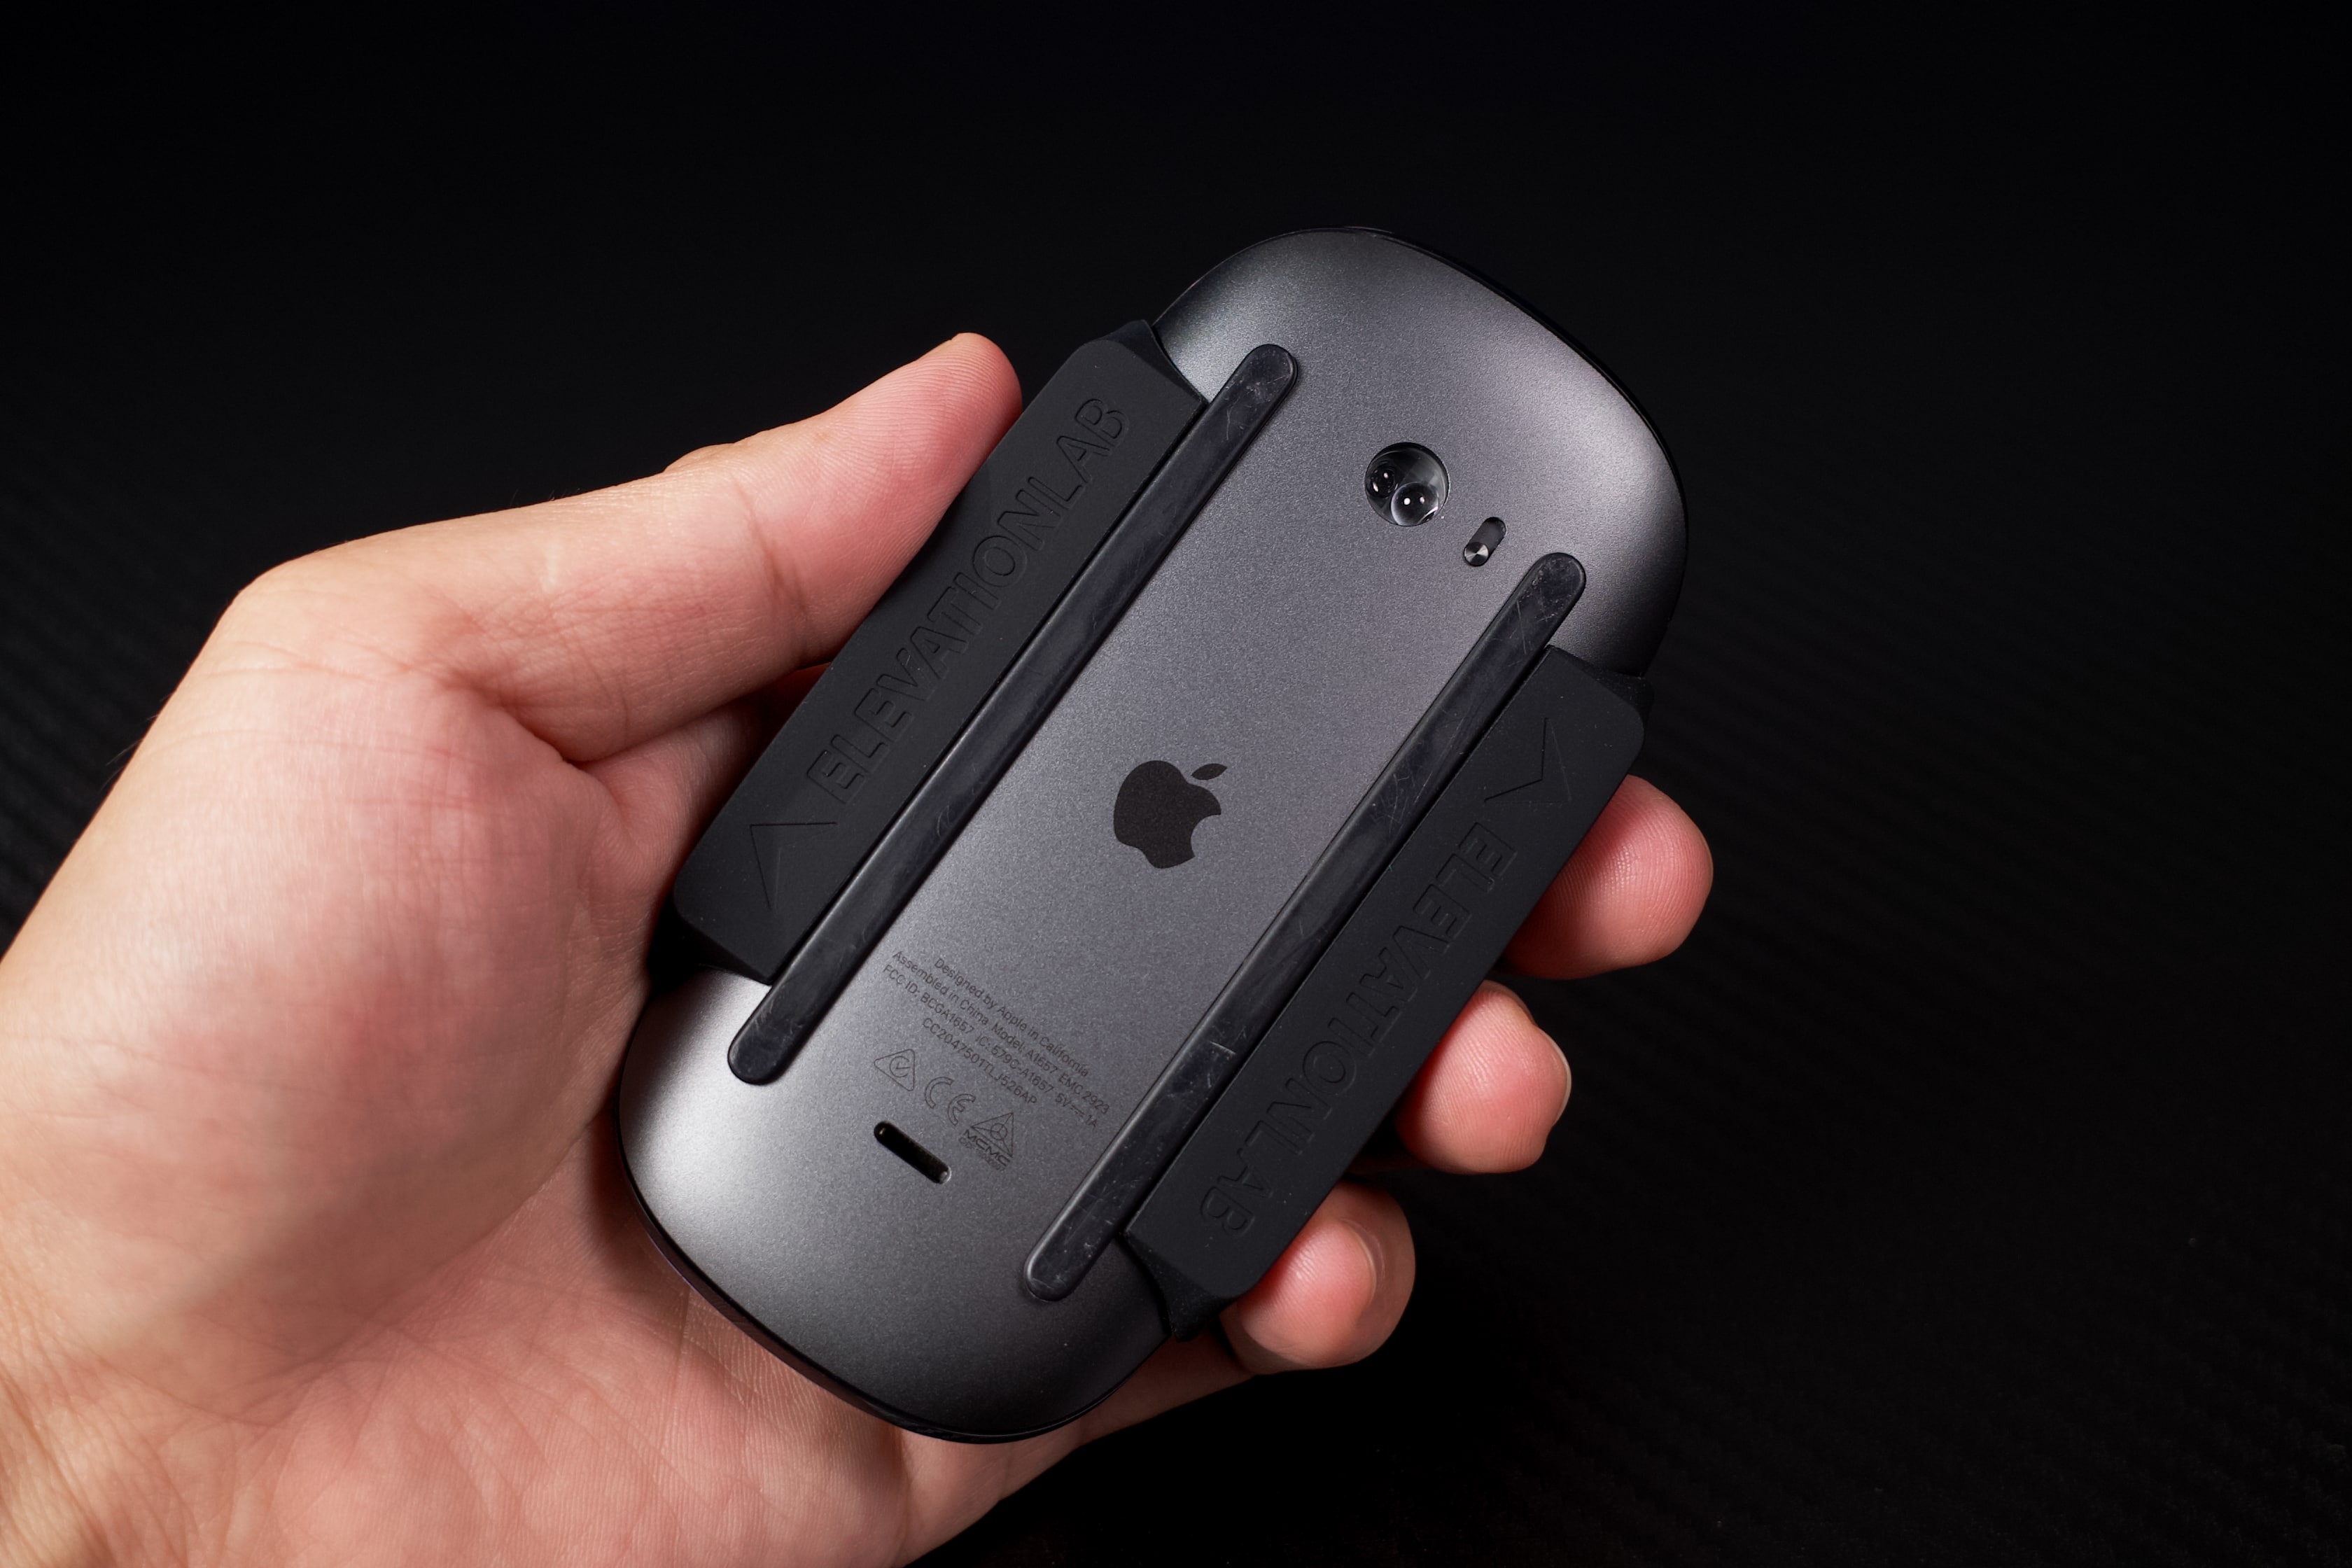 Trên tay Magic Grip, phụ kiện giúp cầm nắm Magic Mouse dễ dàng hơn cho người tay to